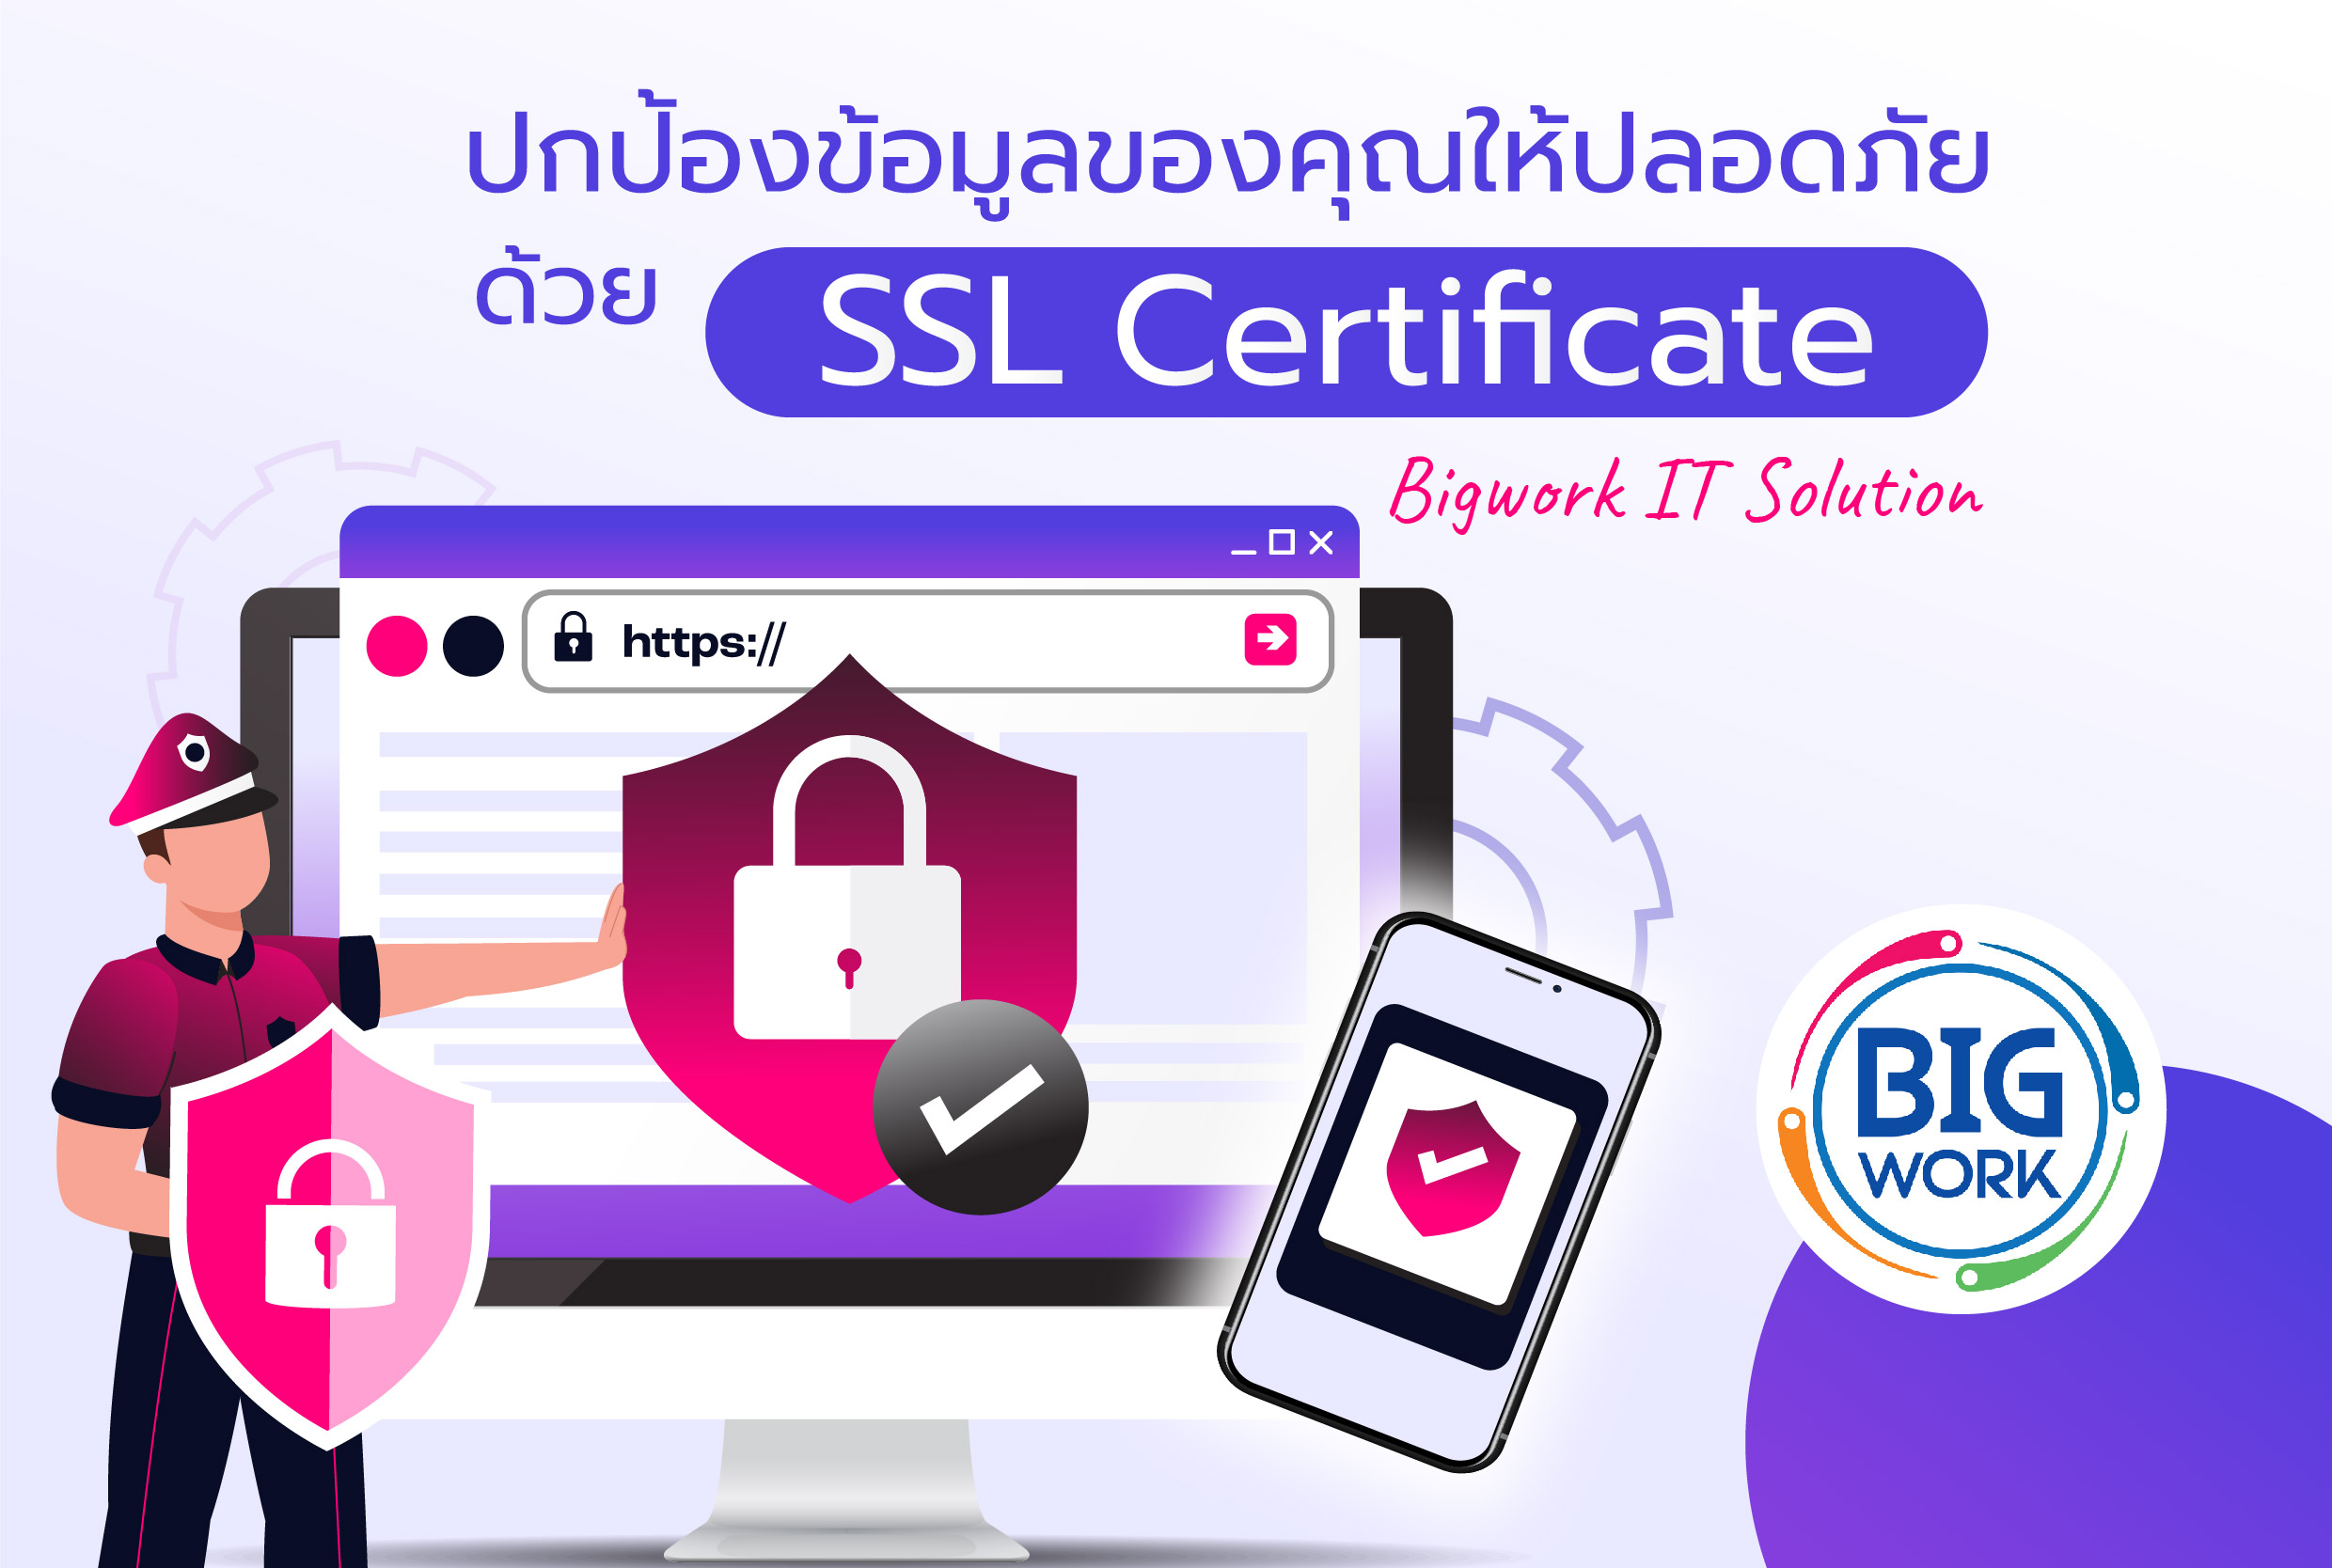 ปกป้องข้อมูลของคุณให้ปลอดภัยด้วย SSL Certificate